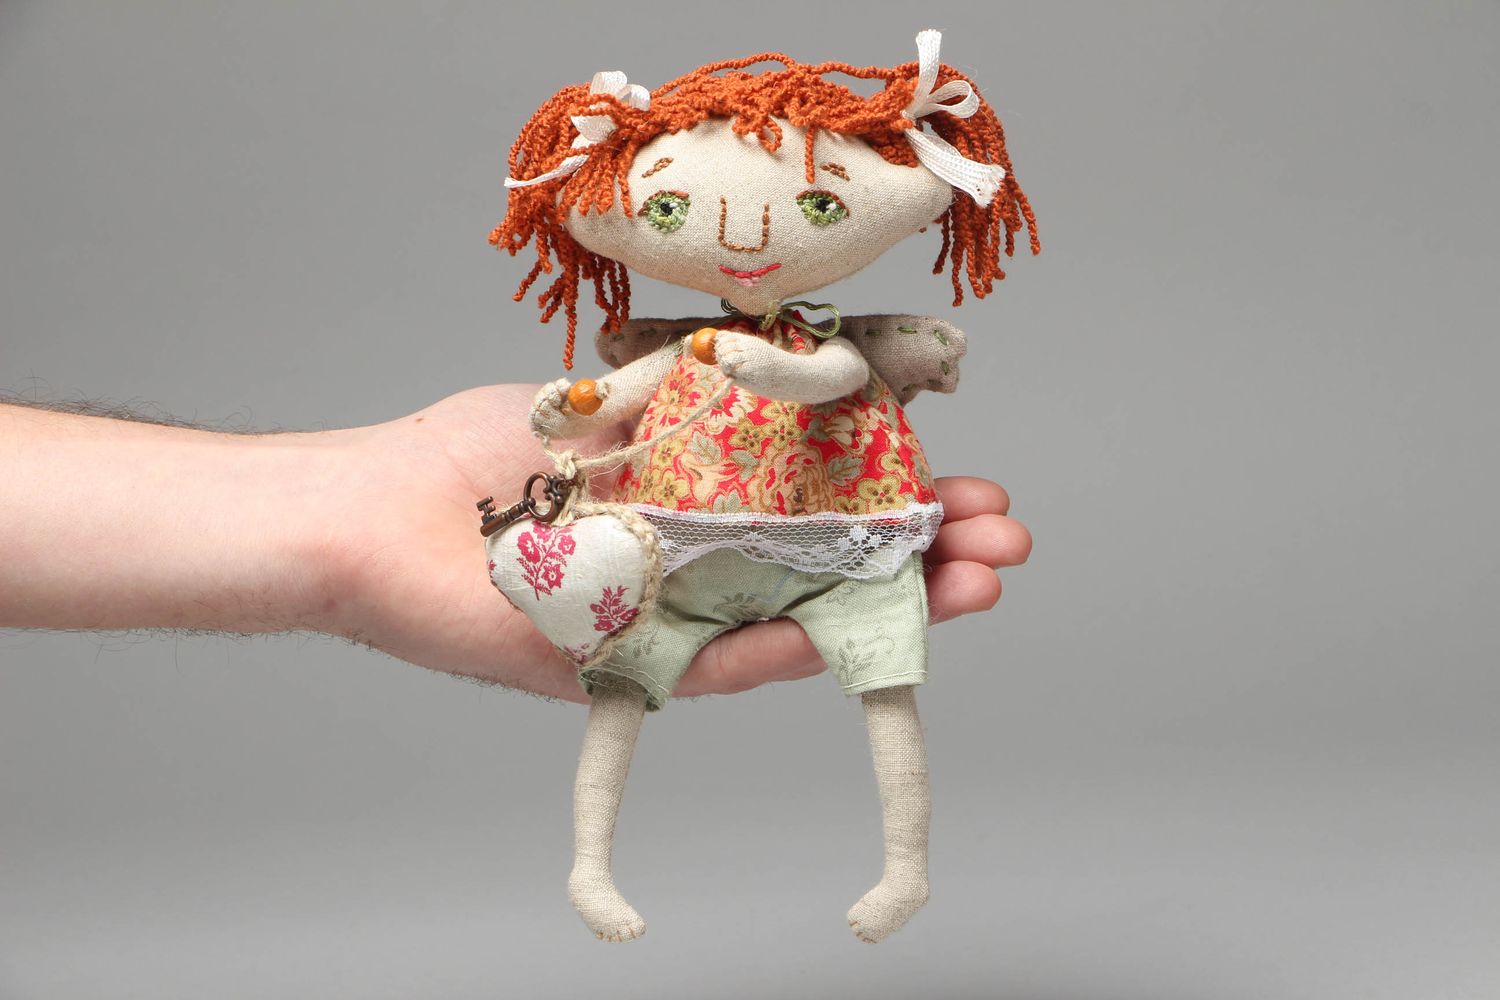 Textil Puppe handmade für Interieur foto 4